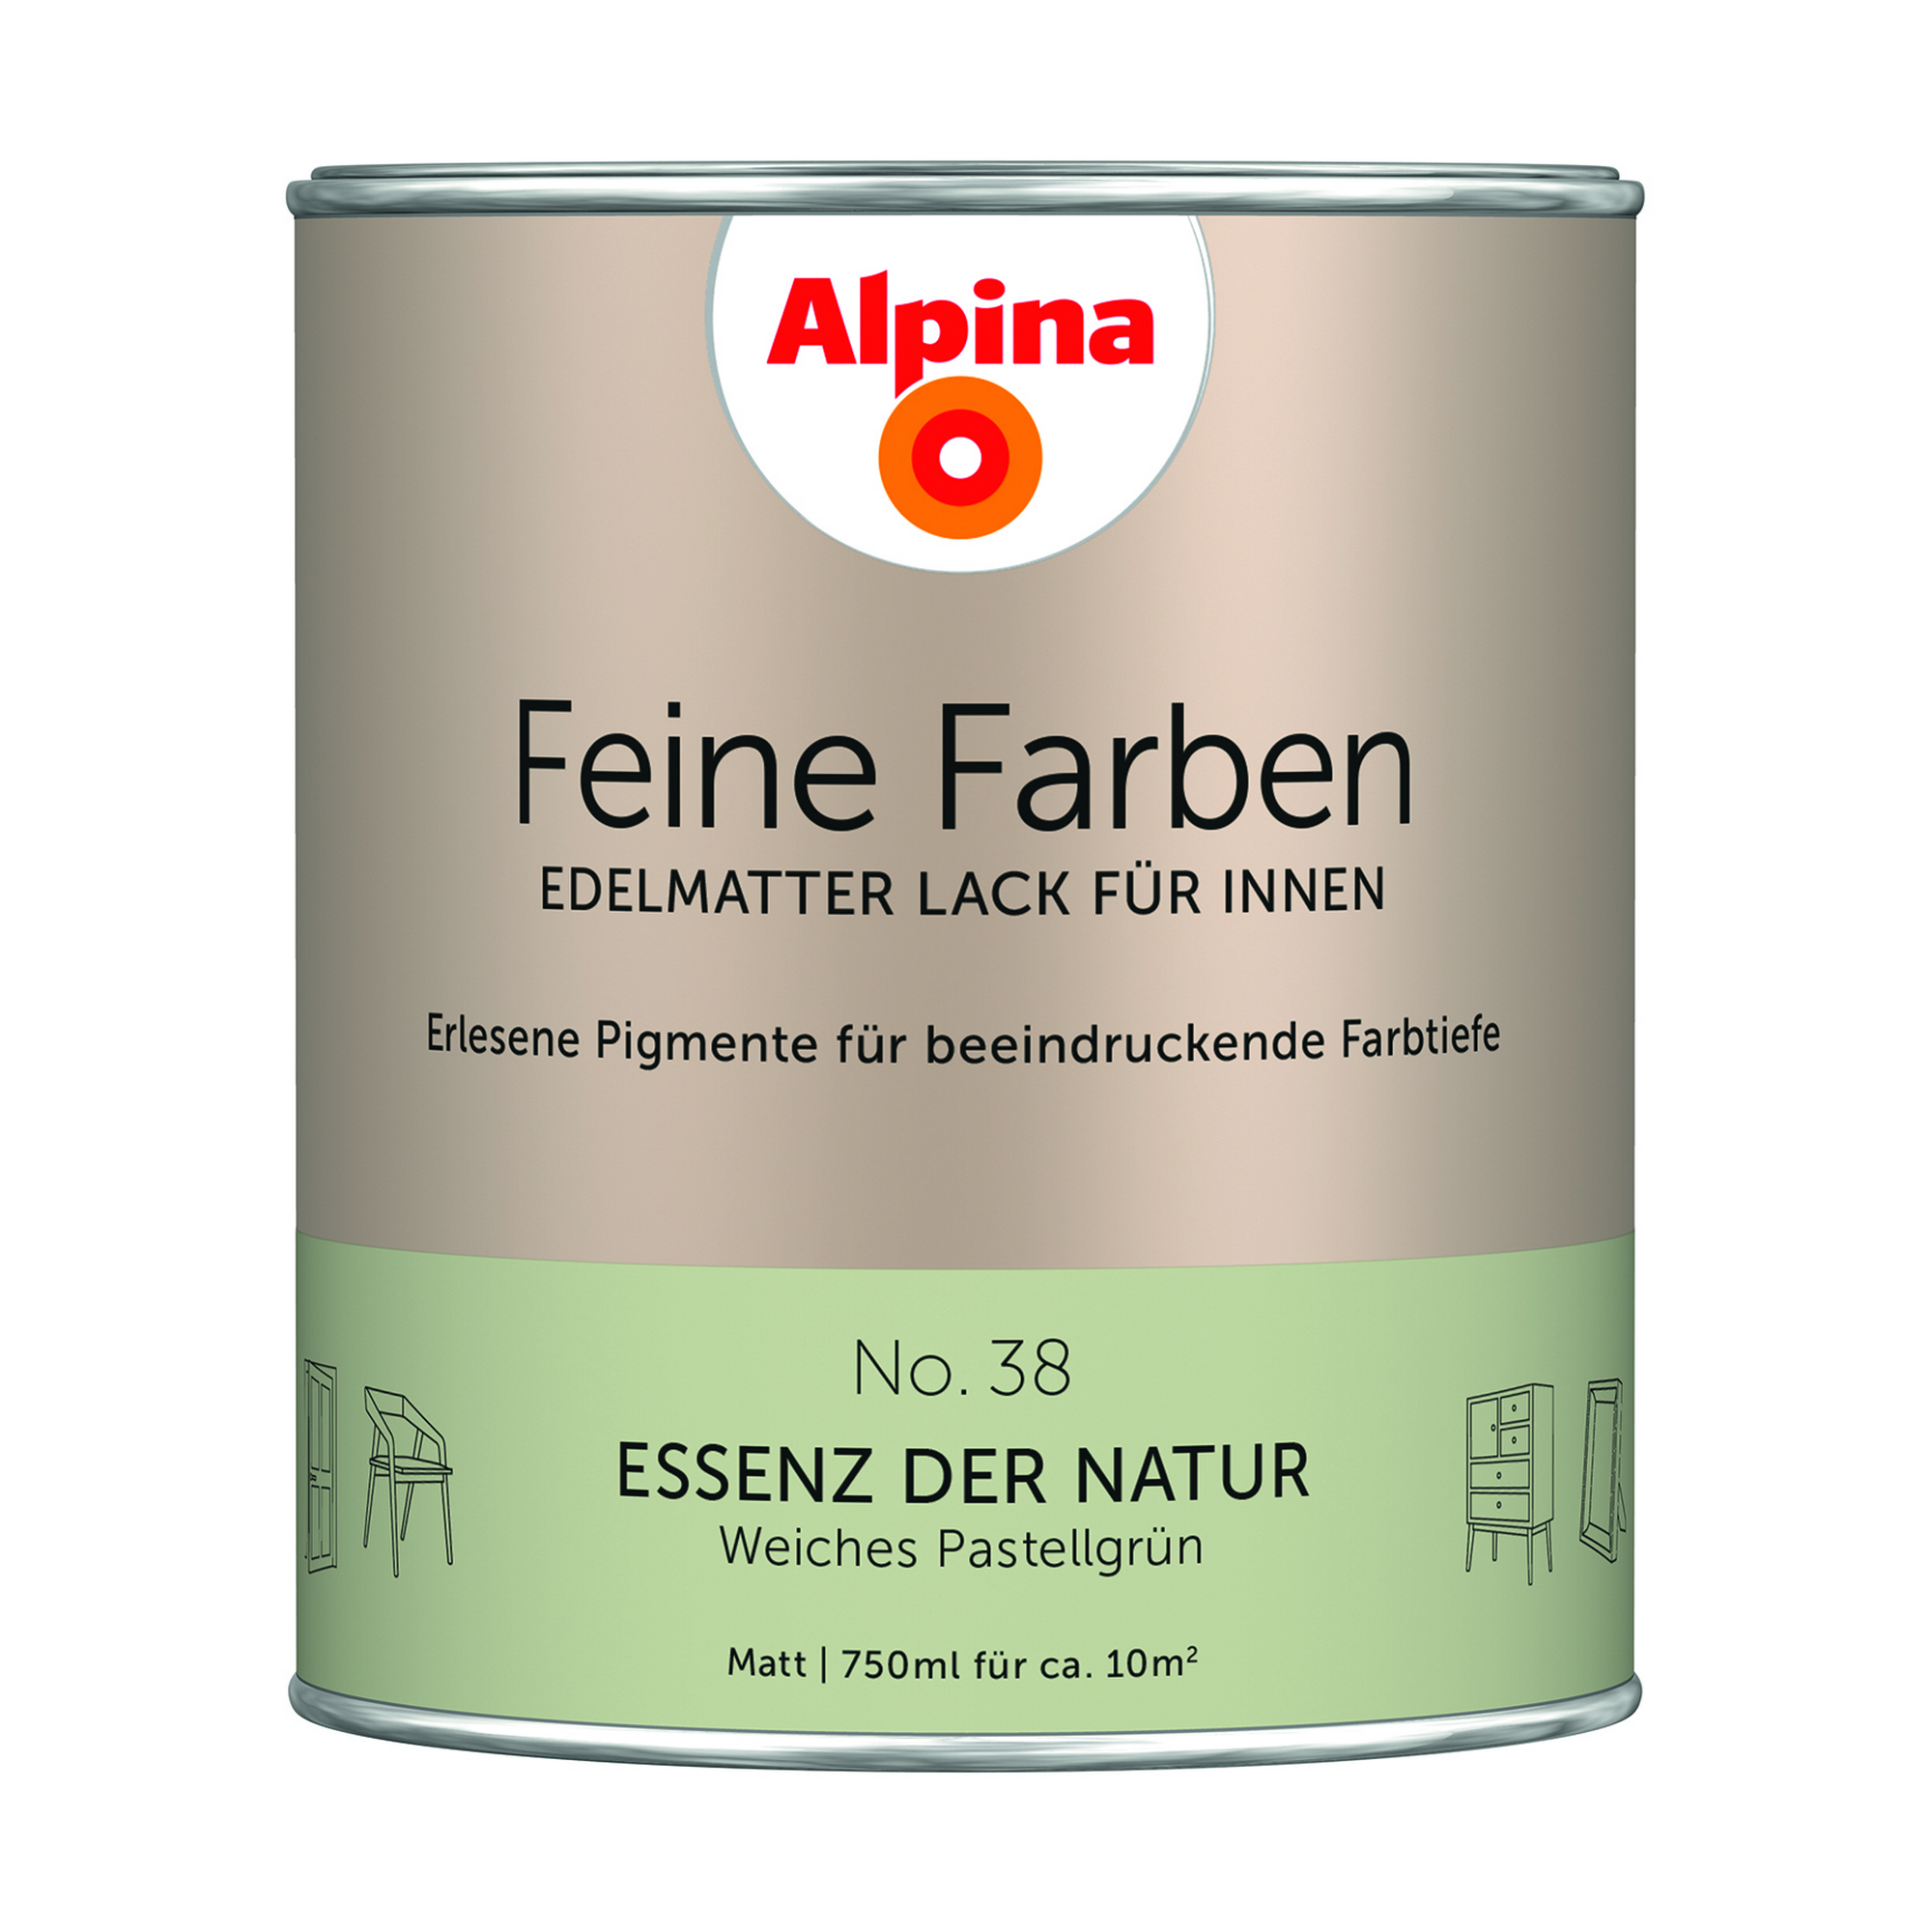 Feine Farben 'Essenz der Natur' pastellgrün matt 750 ml + product picture